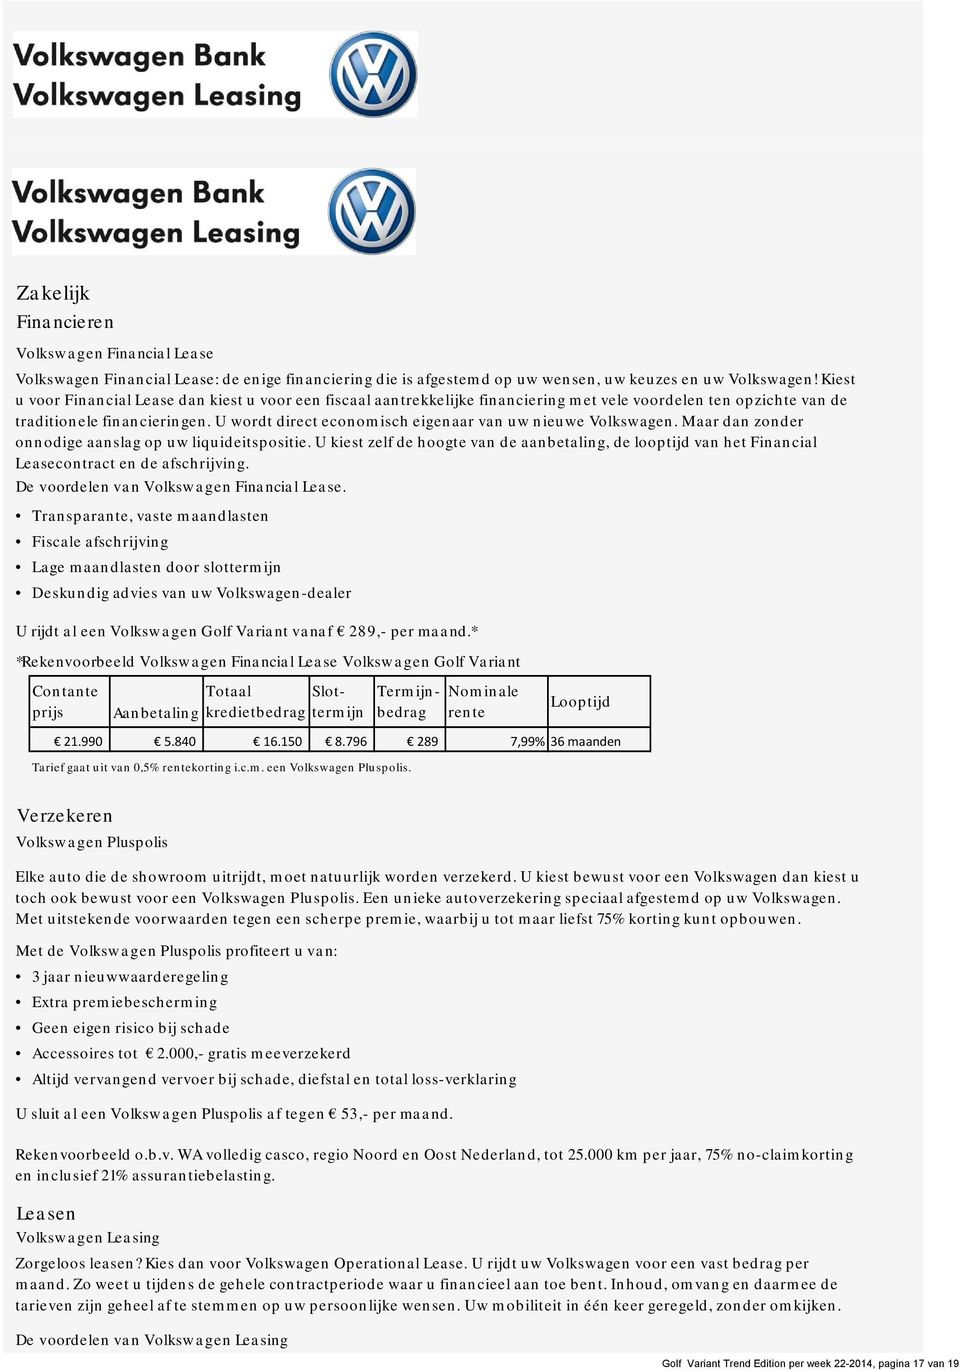 U wordt direct economisch eigenaar van uw nieuwe Volkswagen. Maar dan zonder onnodige aanslag op uw liquideitspositie.